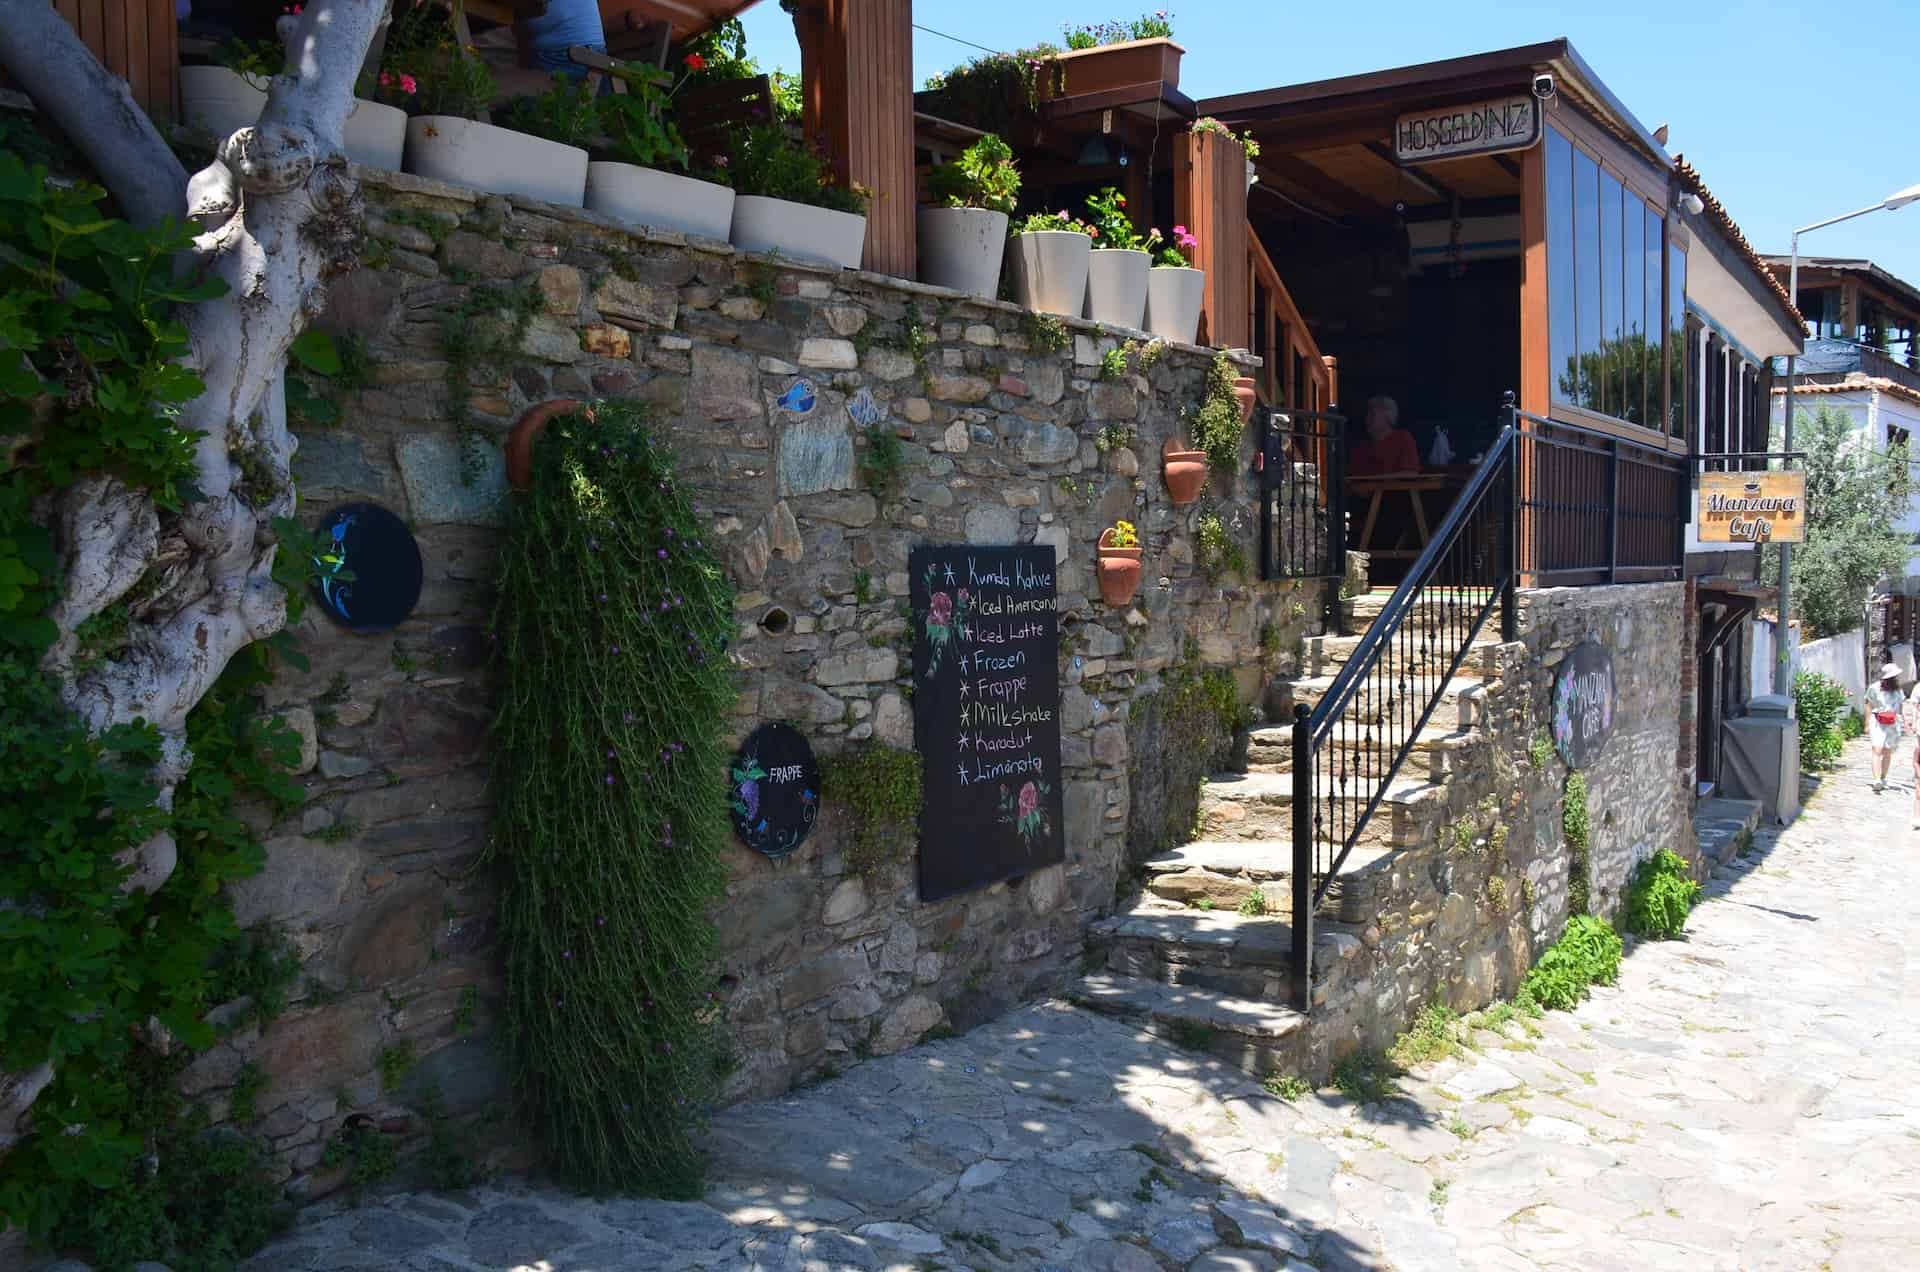 Manzara Café in Şirince, Turkey